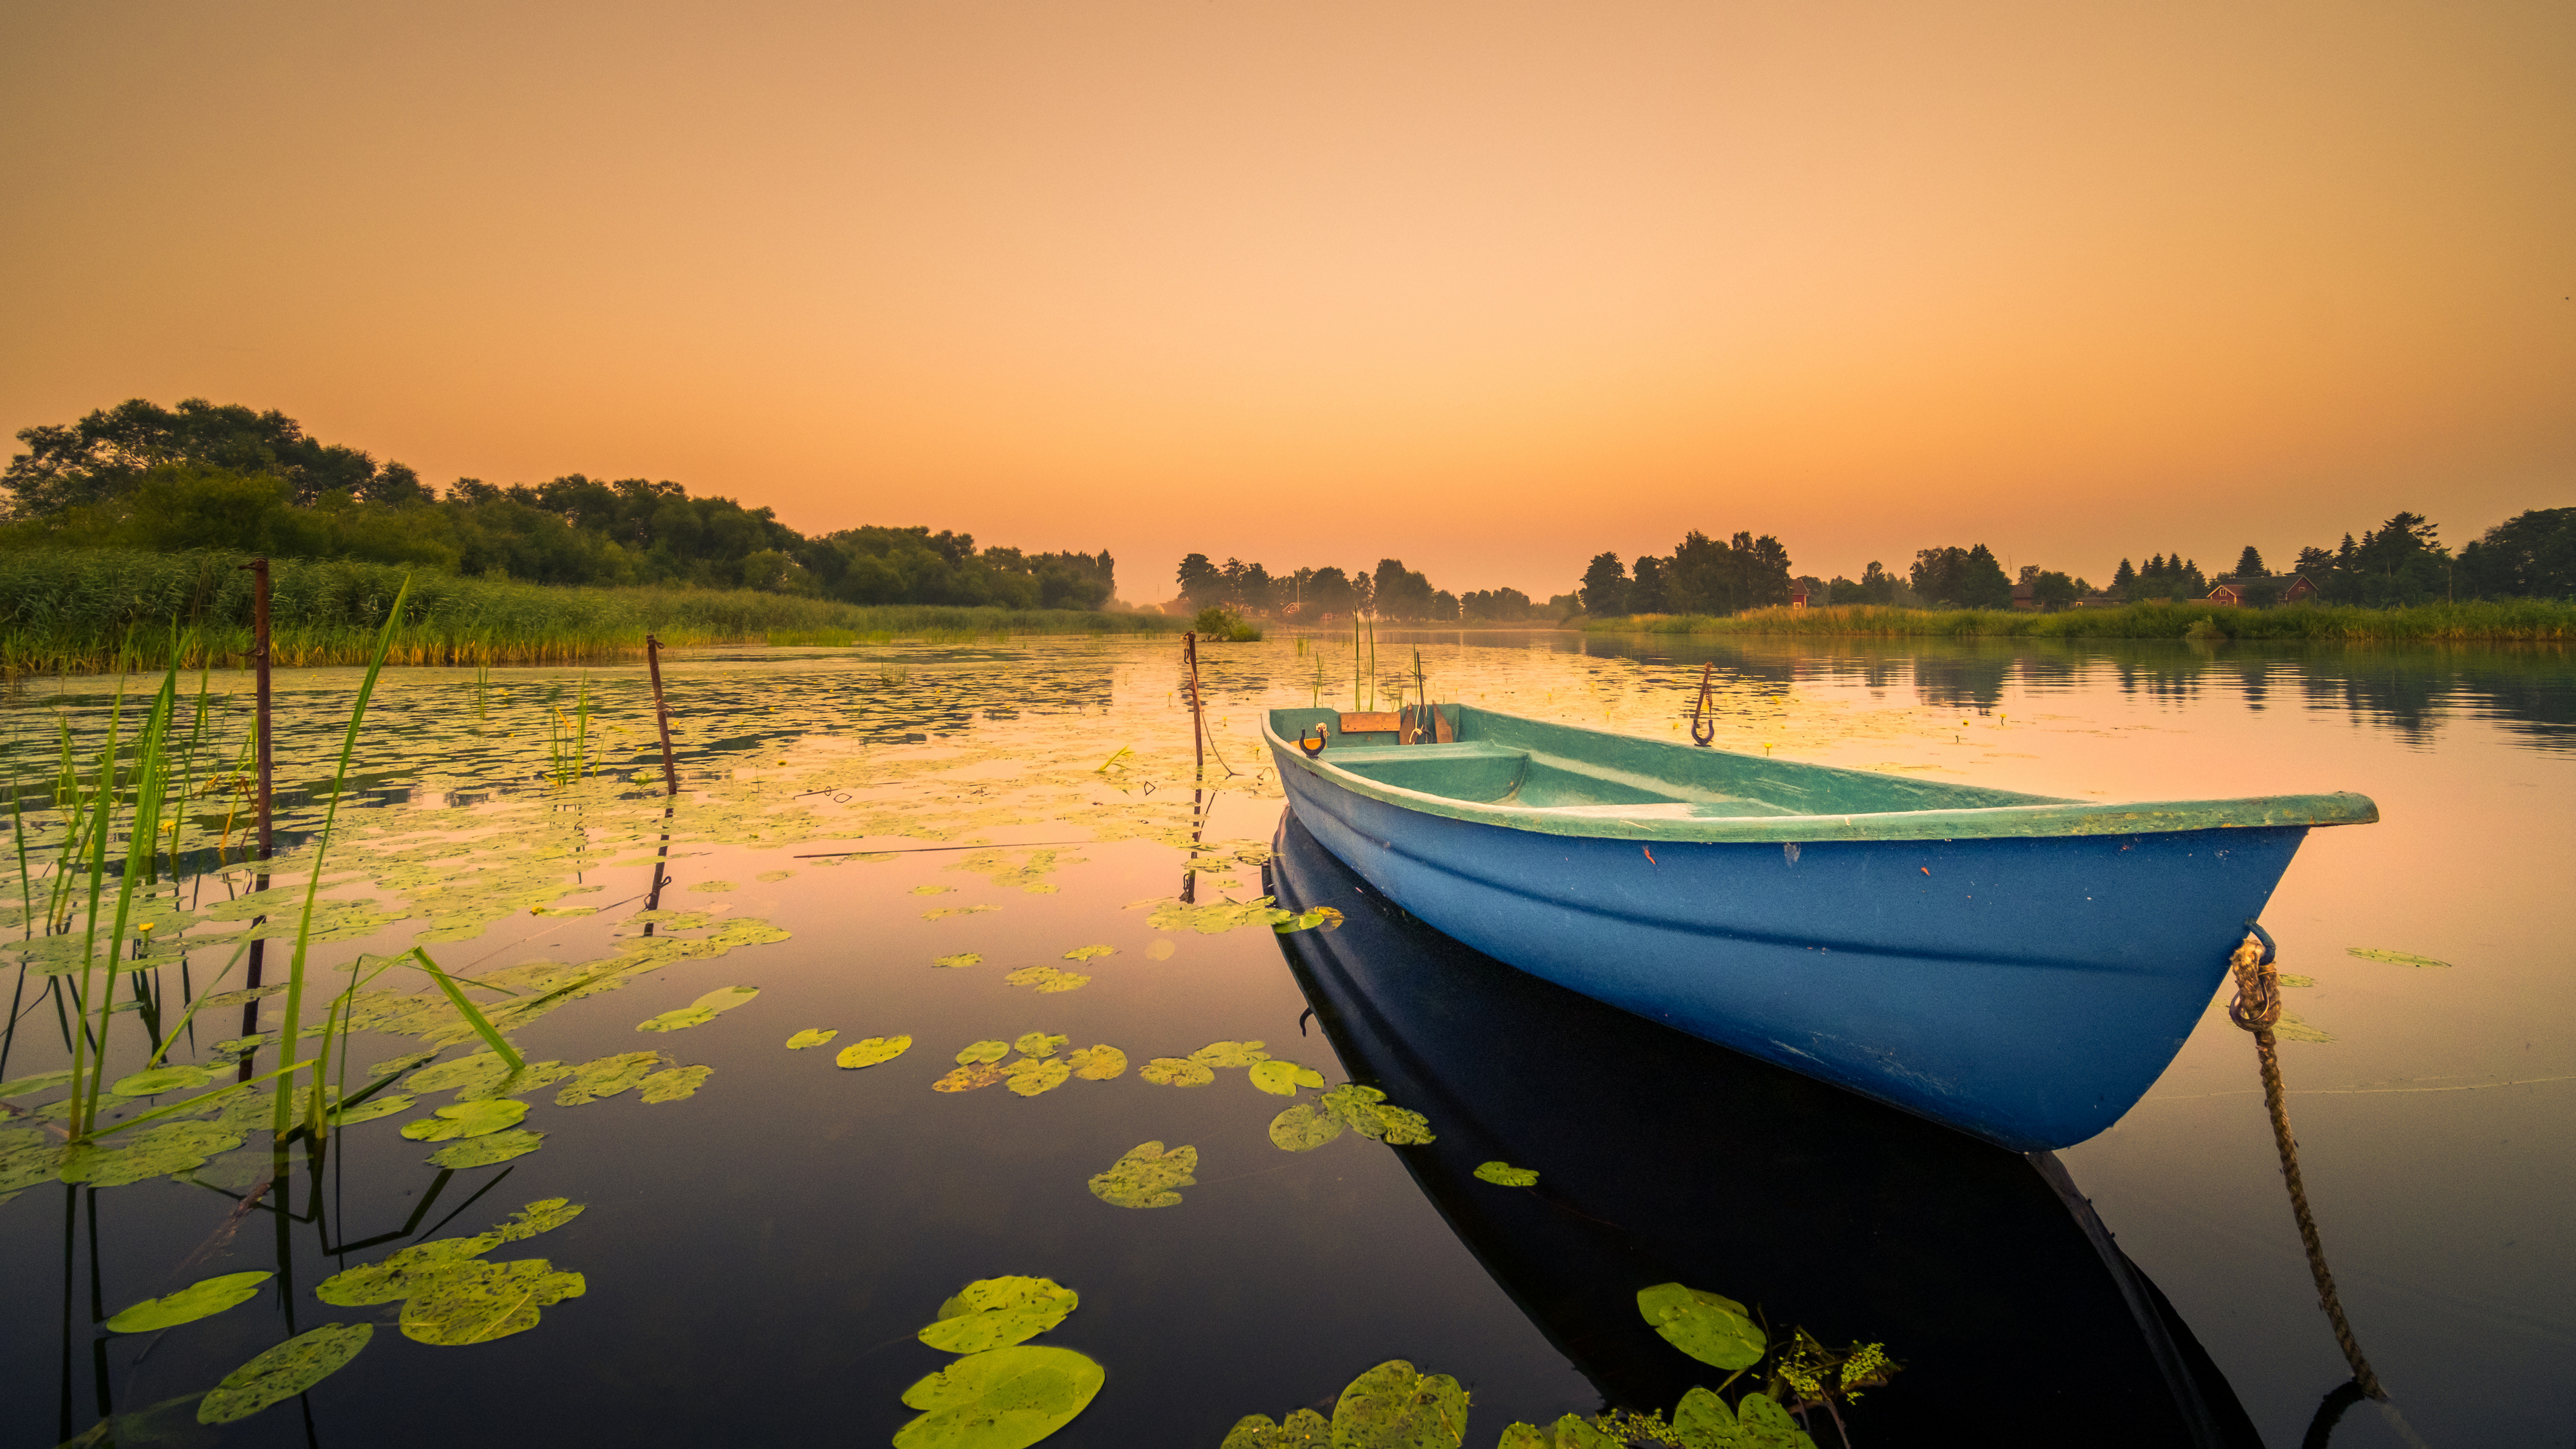 Zastaki.com - Голубая лодка в озере на закате солнца